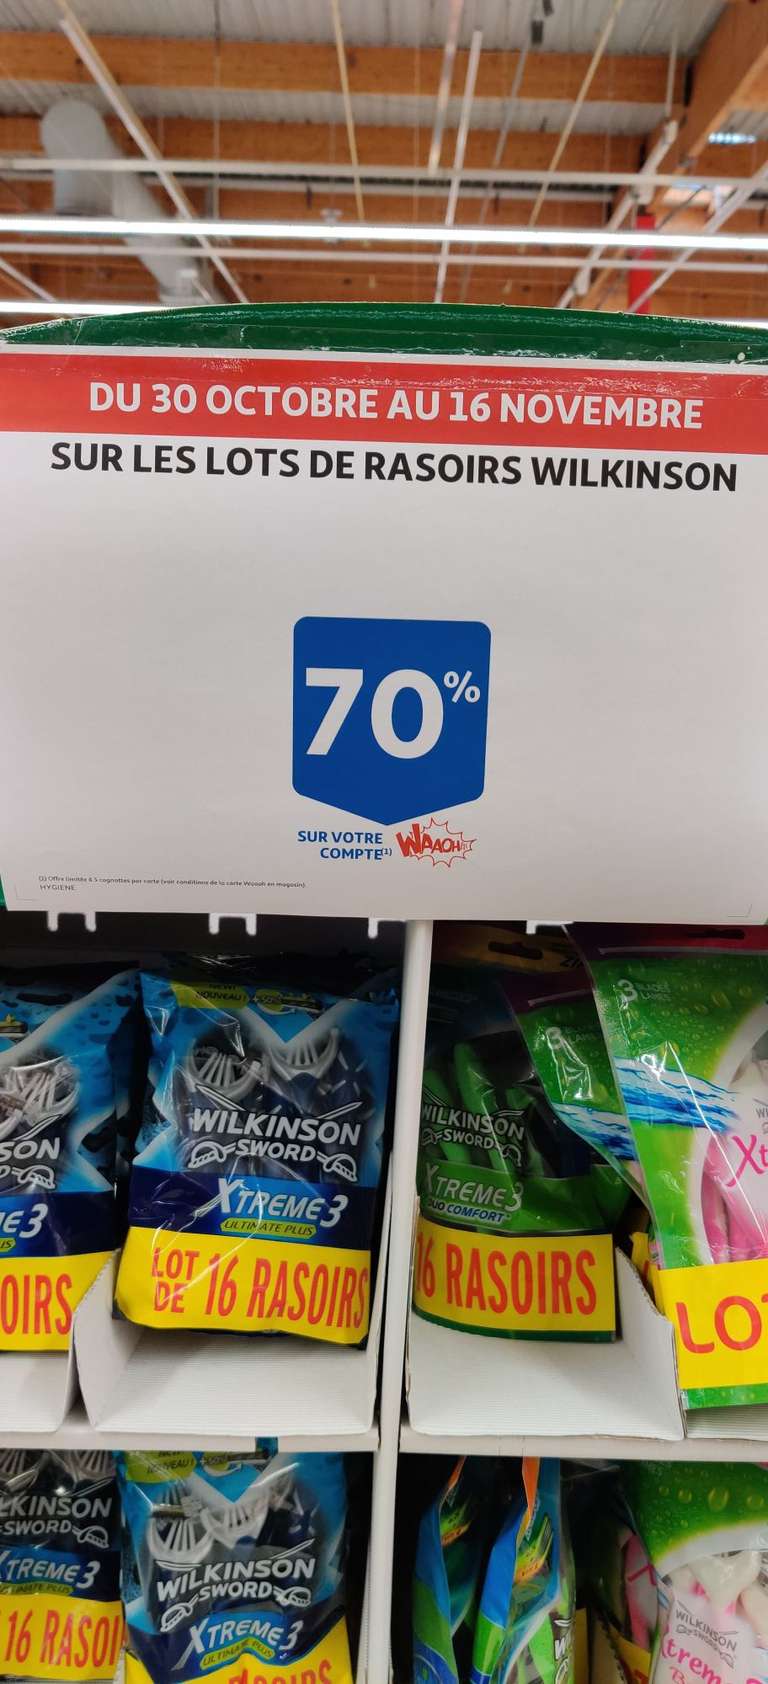 Lot de 16 rasoirs Wilkinson - Auchan Taverny 95 (Via 12.17€ sur la Carte de Fidélité)